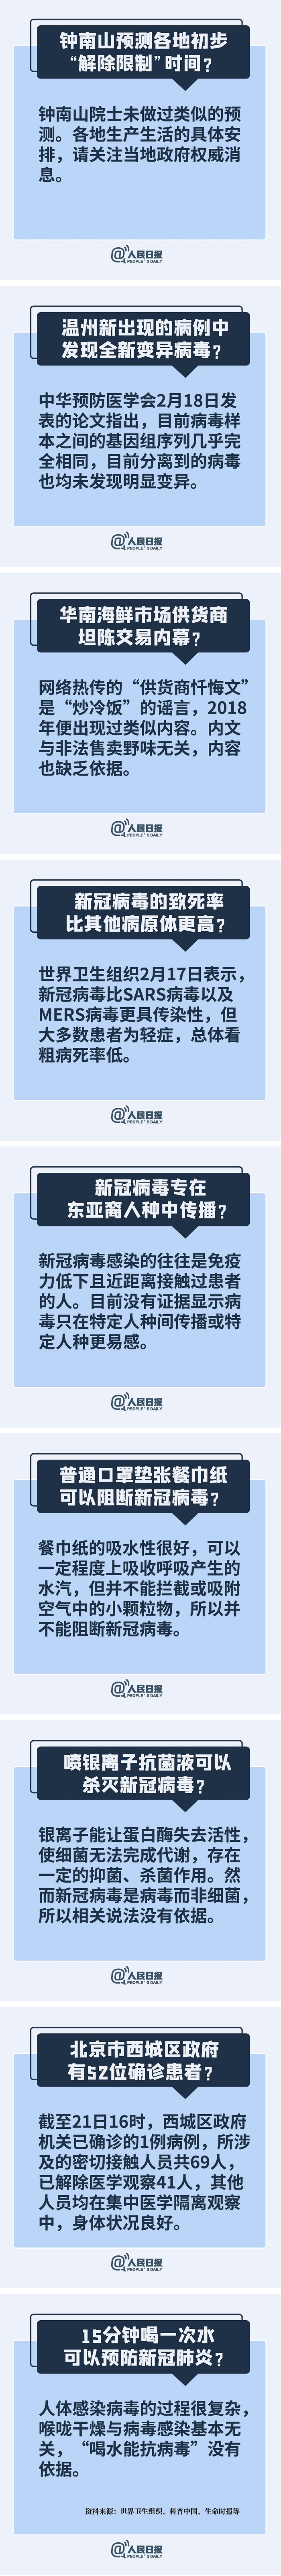 钟南山预测“解禁”时间？温州现变异病毒？谣言！